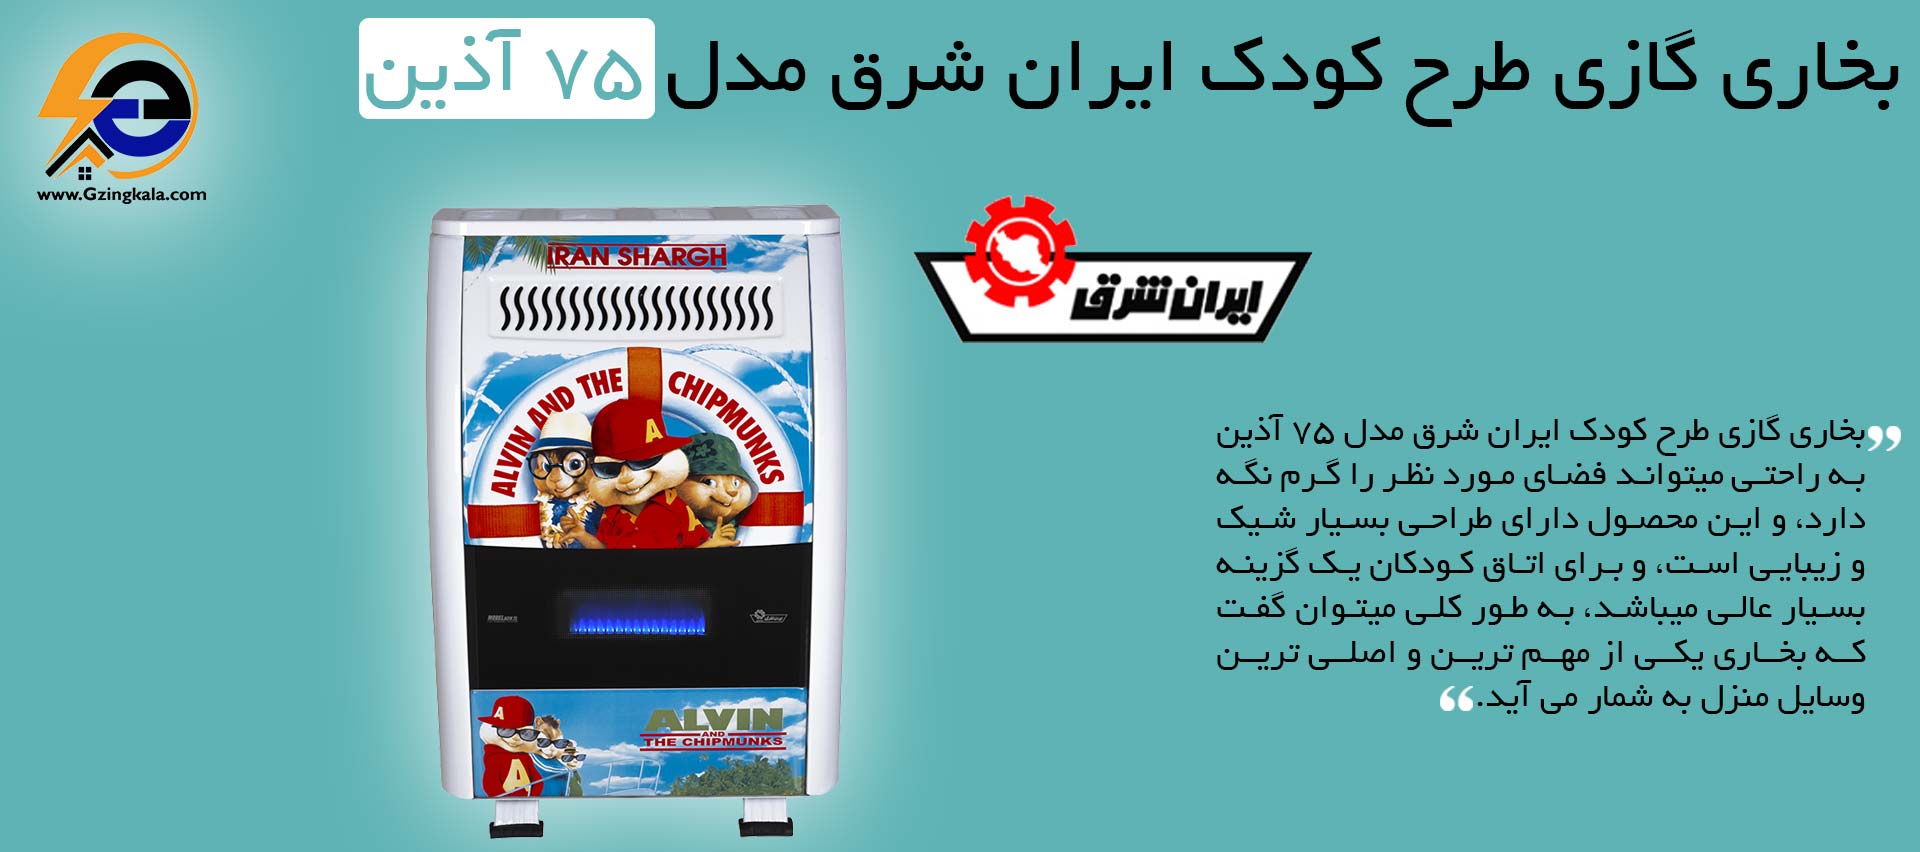 بخاری گازی طرح کودک ایران شرق مدل 75 آذین